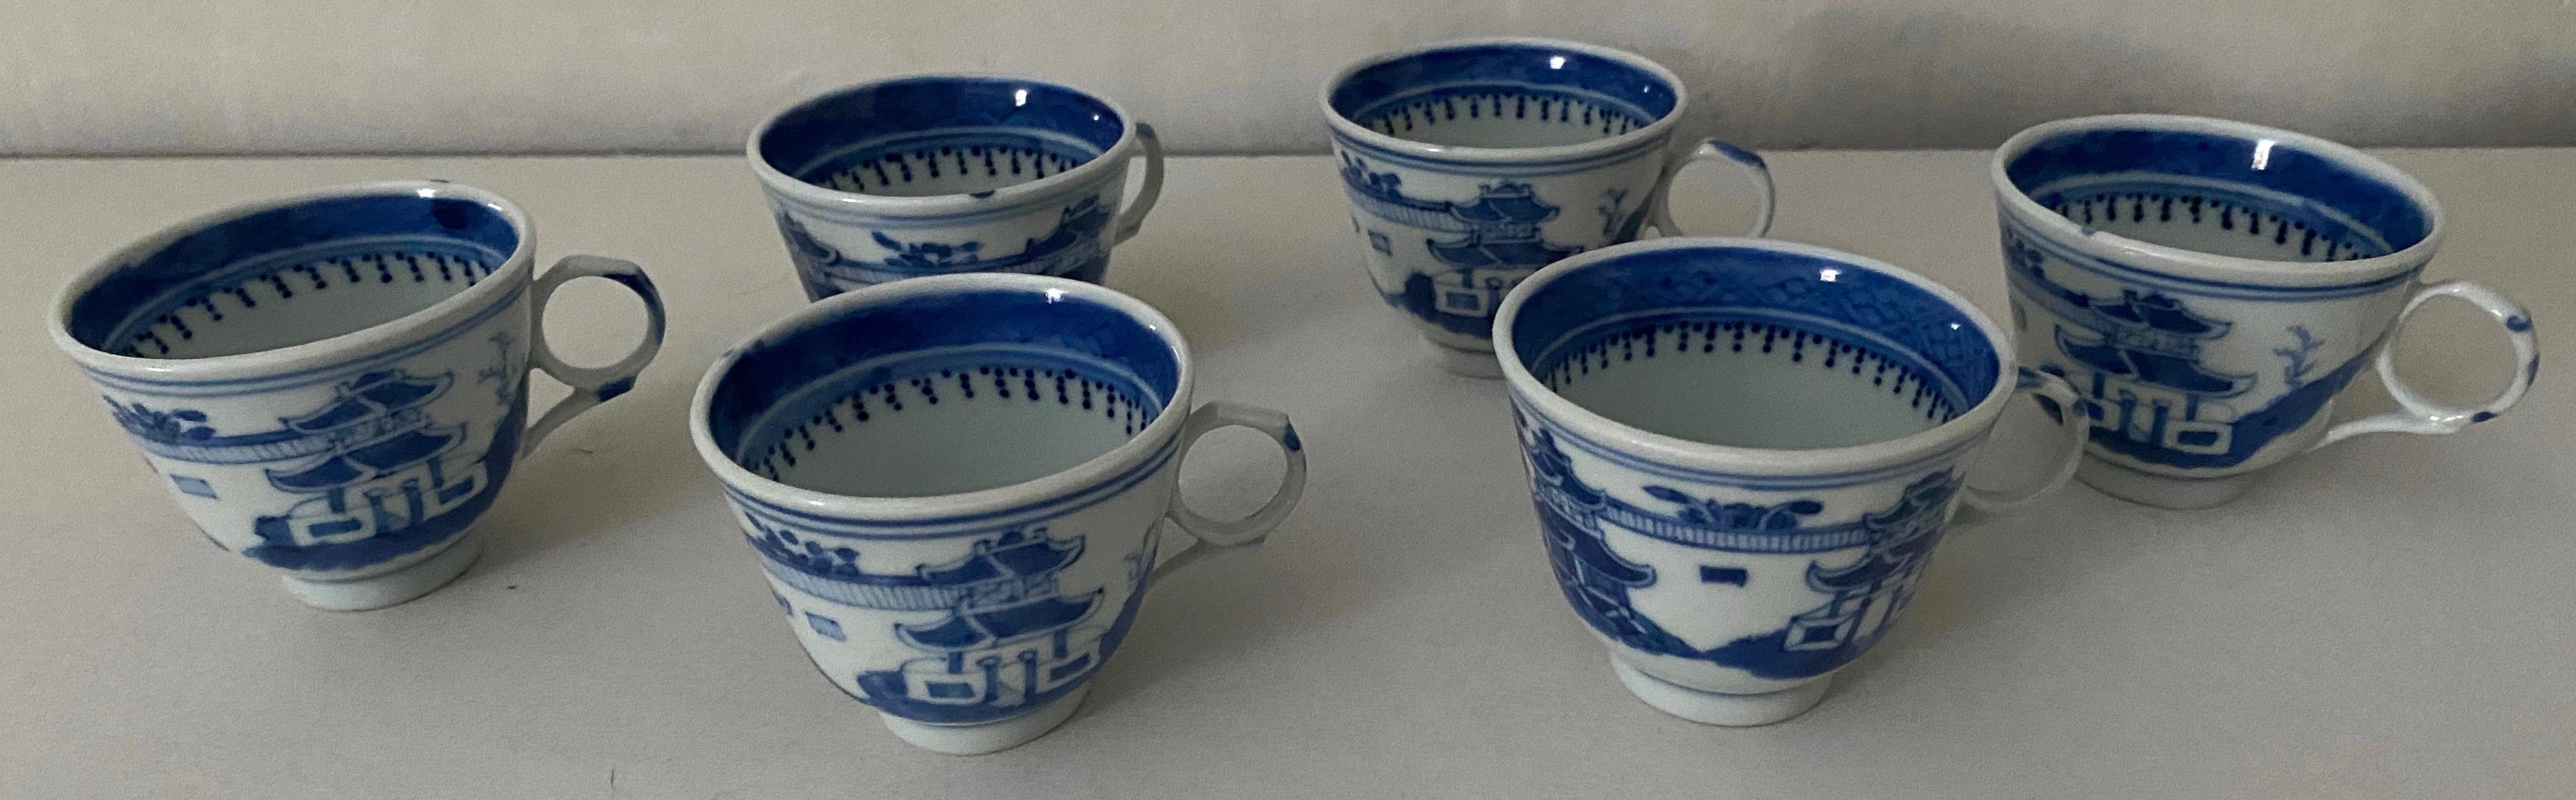 Trinken Sie Tee nach traditionellem chinesischem Brauch oder ergänzen Sie Ihre blau-weiße Sammlung. Dieses Set aus 6 blau-weißen Tassen besteht aus feinem chinesischen Porzellan mit handgemaltem Dekor. Dank des geringen Volumens einer kleinen Tasse